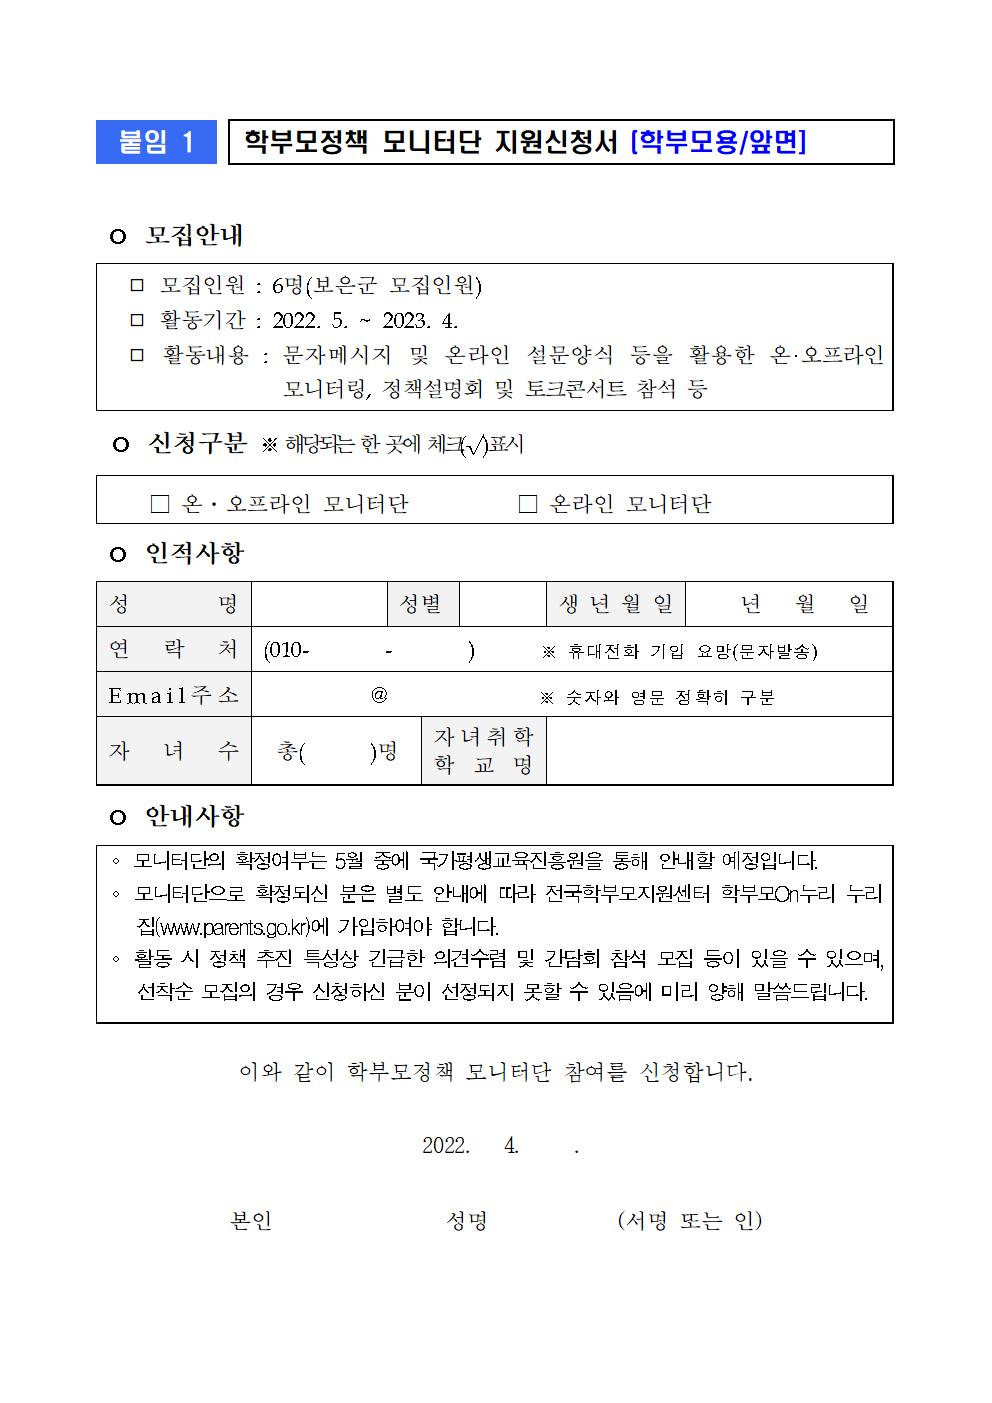 모니터단 모집 관련 가정통신문002